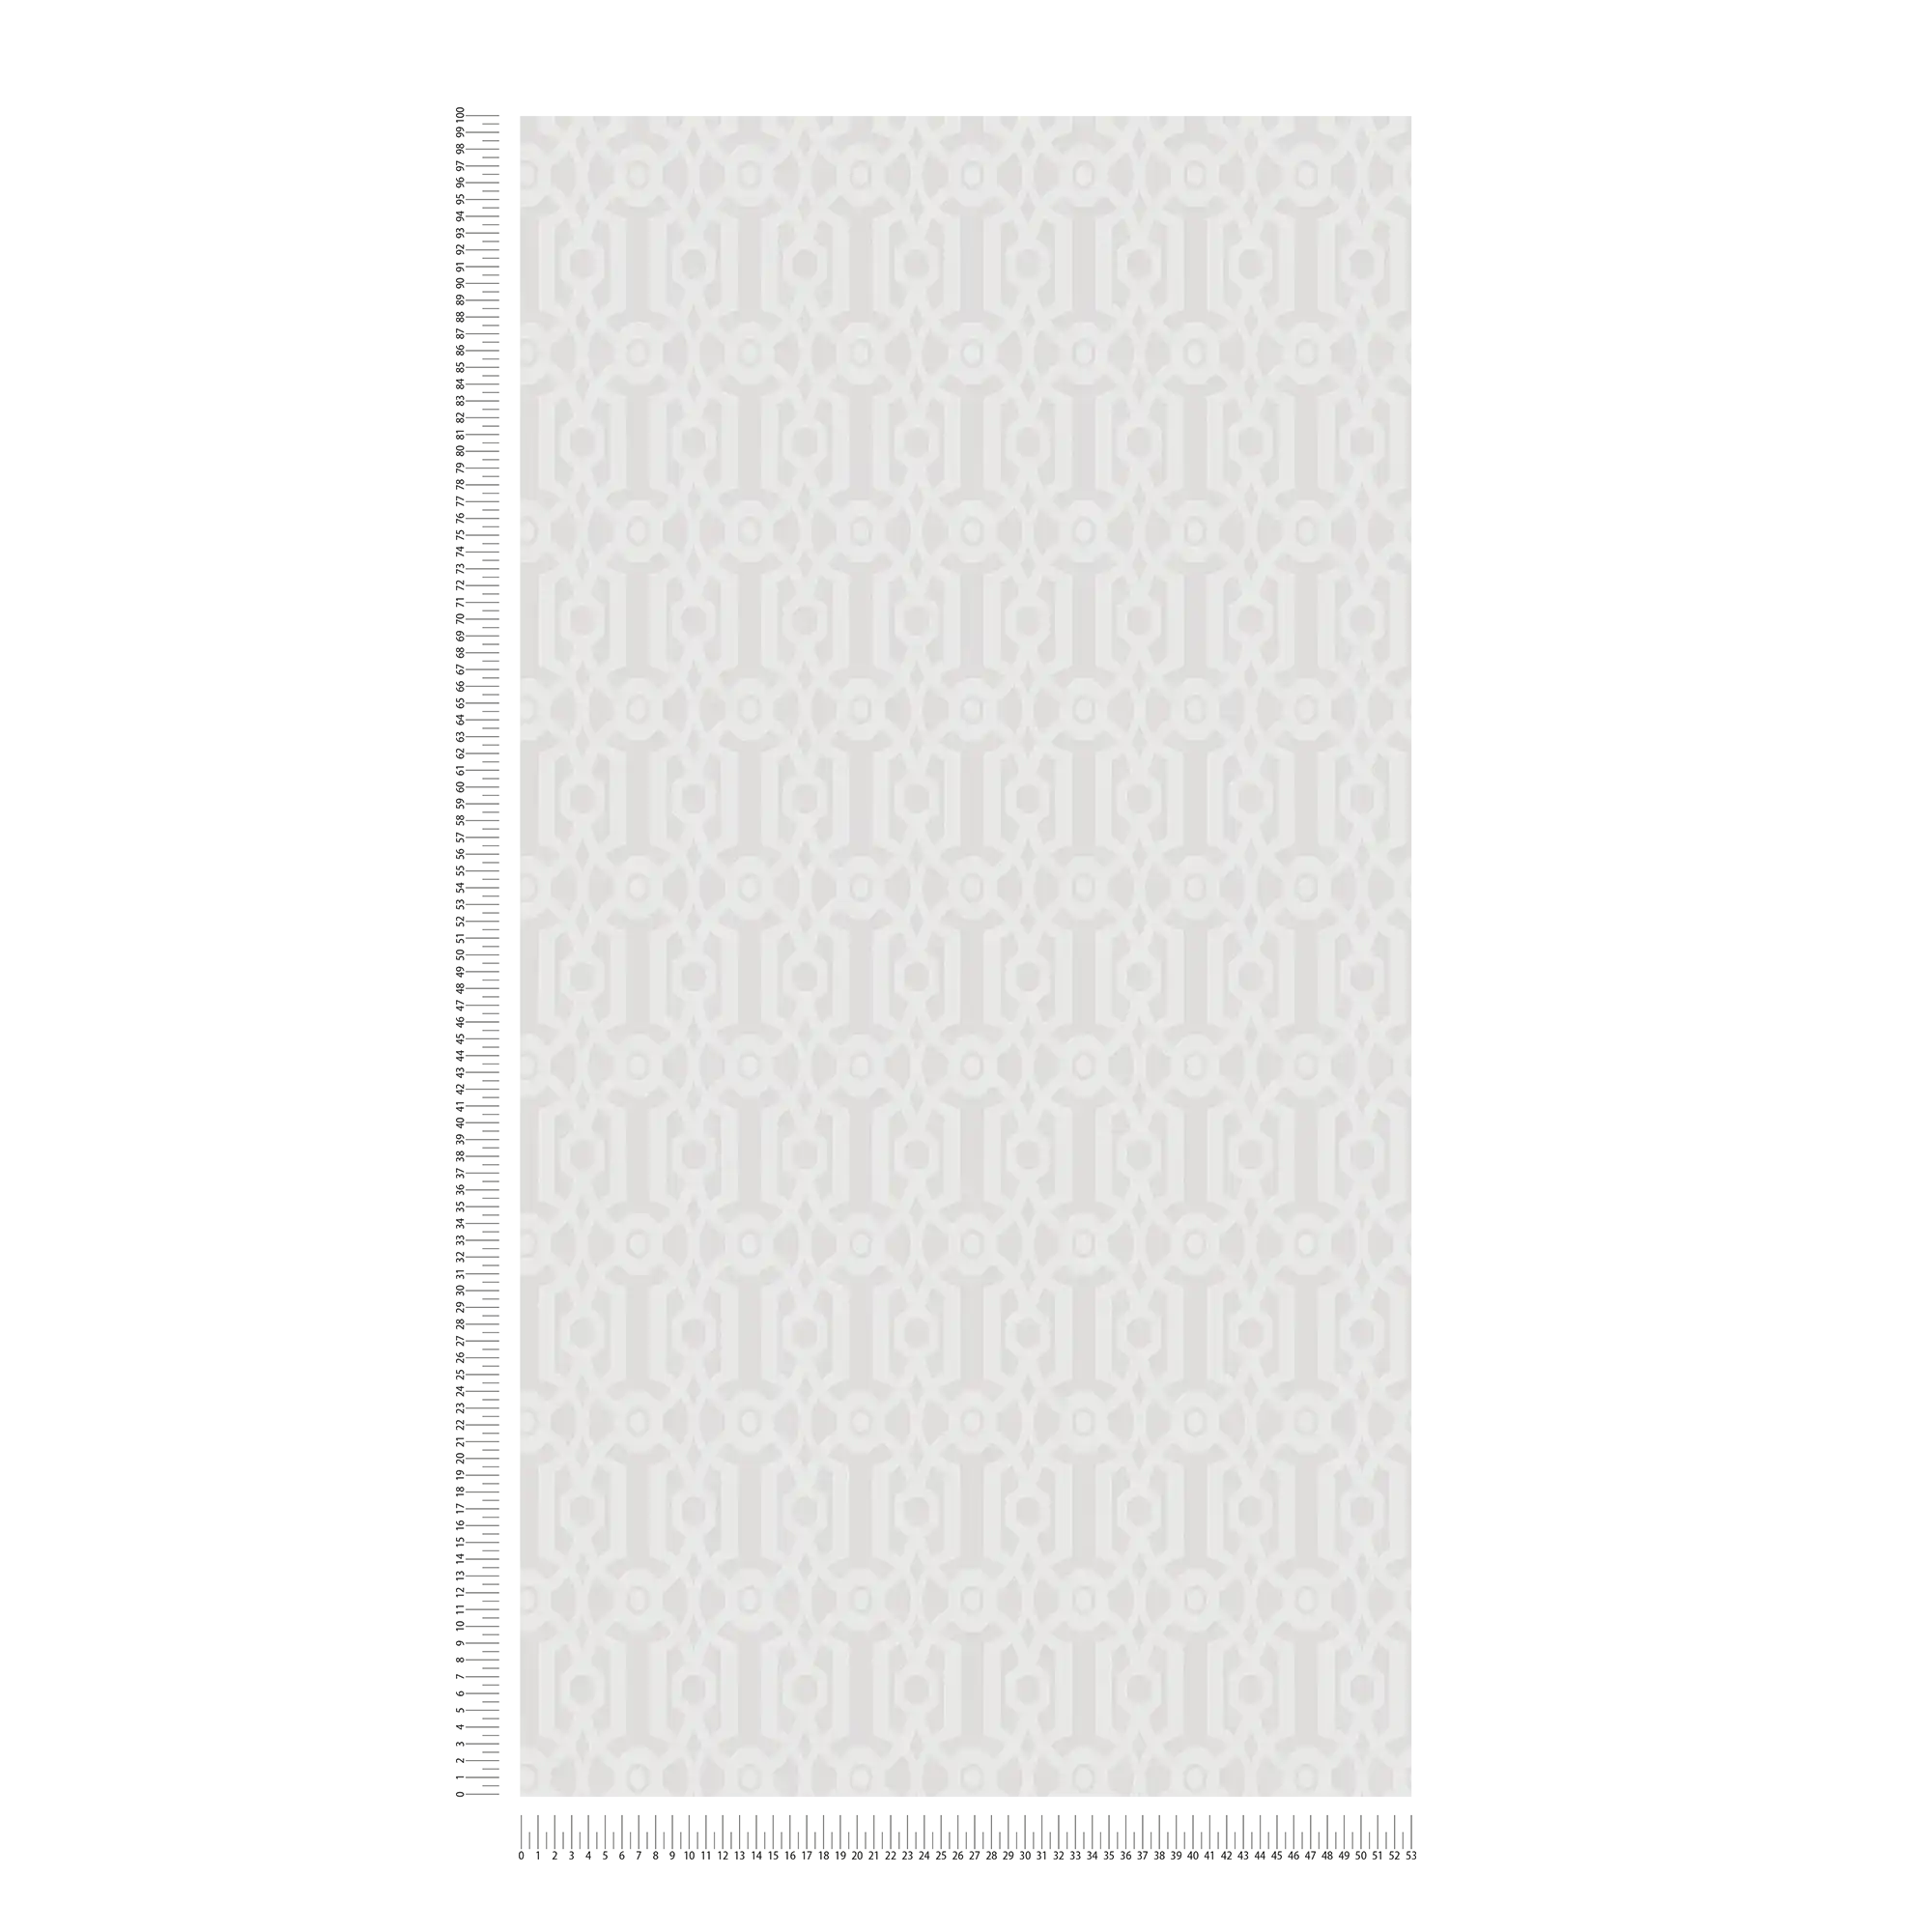             Papier peint à motif de lignes graphiques - crème, gris
        